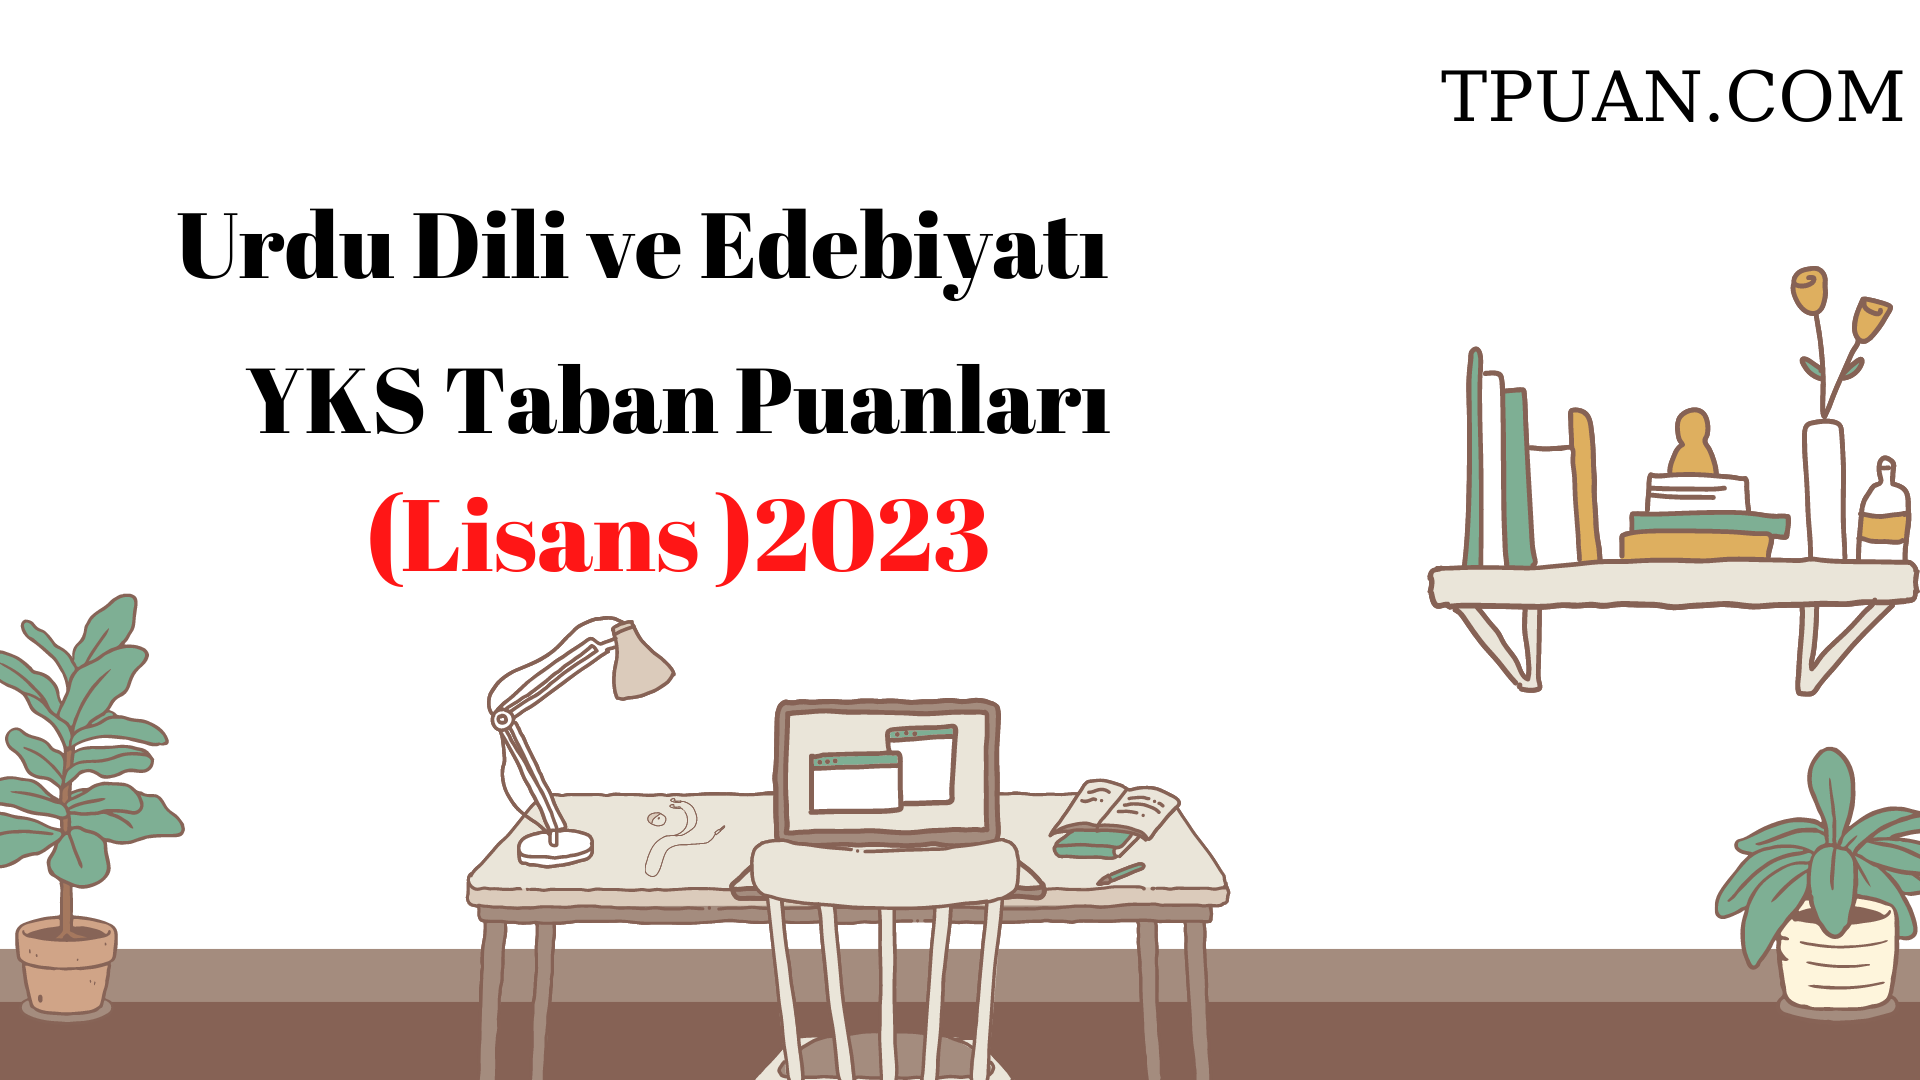  Urdu Dili ve Edebiyatı Bölümü YKS Taban Puanları (4 Yıllık) 2023